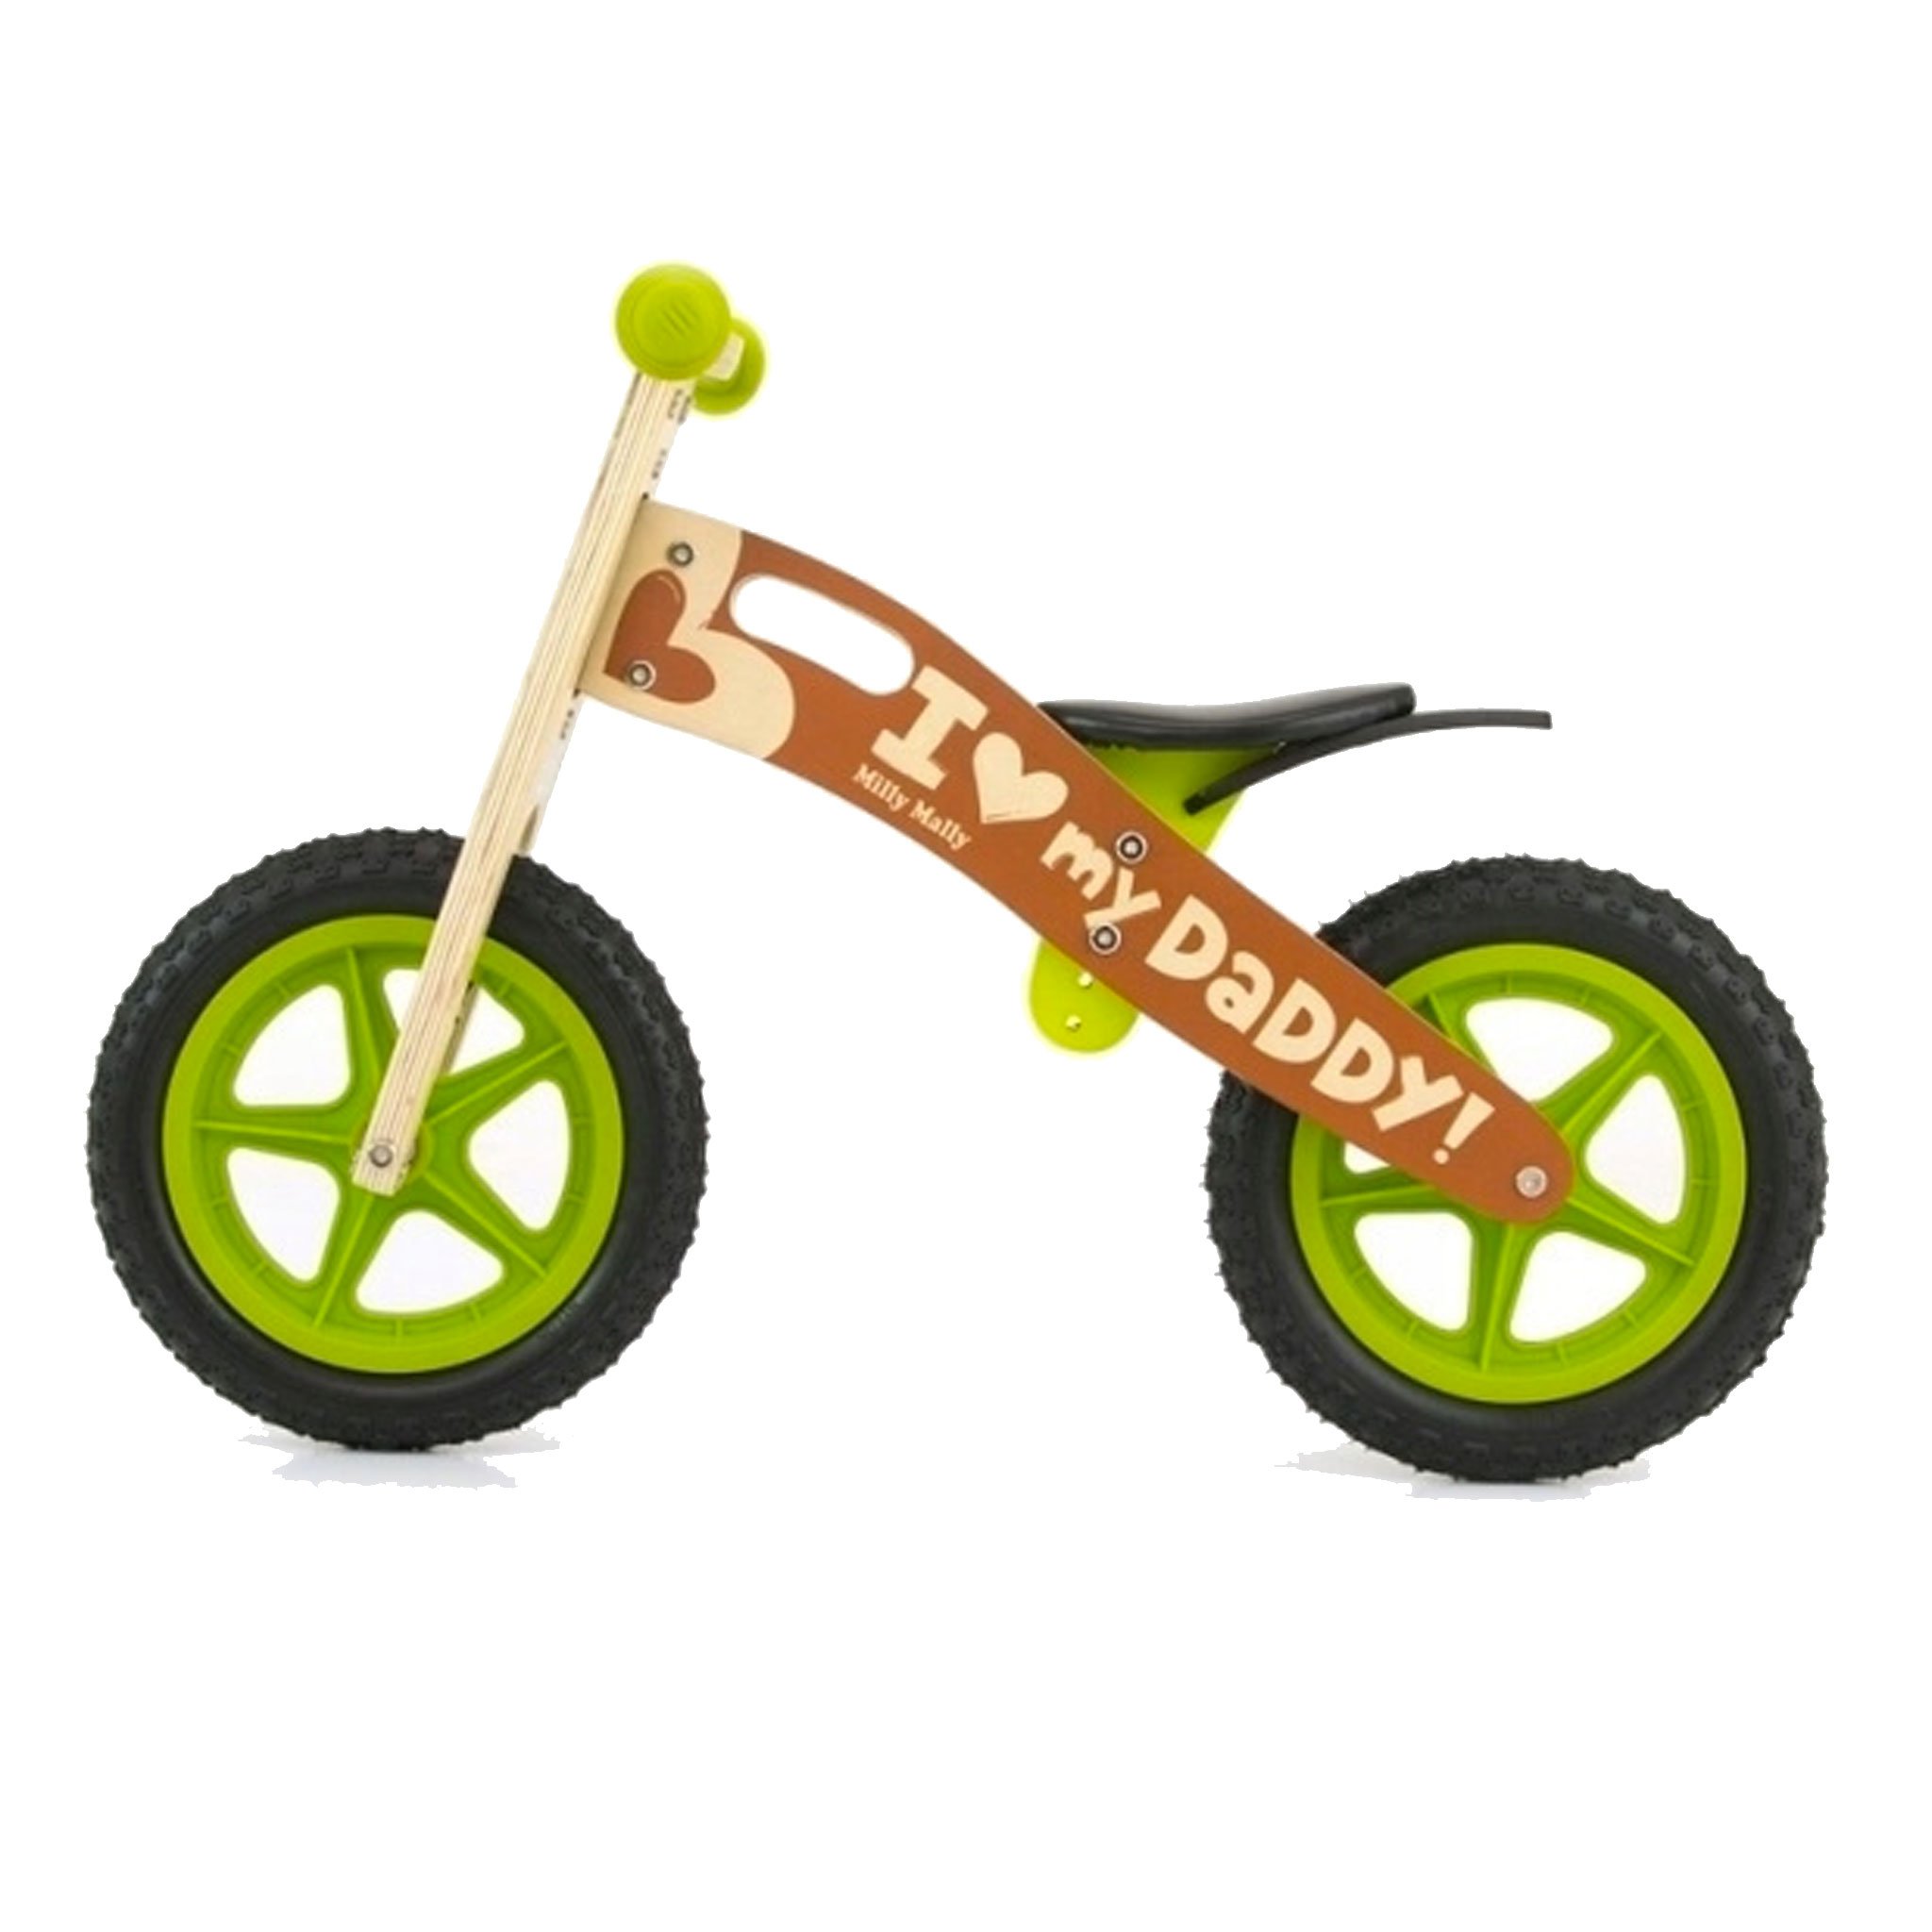 PM0472-cavalcabile-ruote-bici-senza-pedali-bambini-equilibrio-balance-bike-giochi-esterno-mobilita-crescita-legno-betulla.jpg